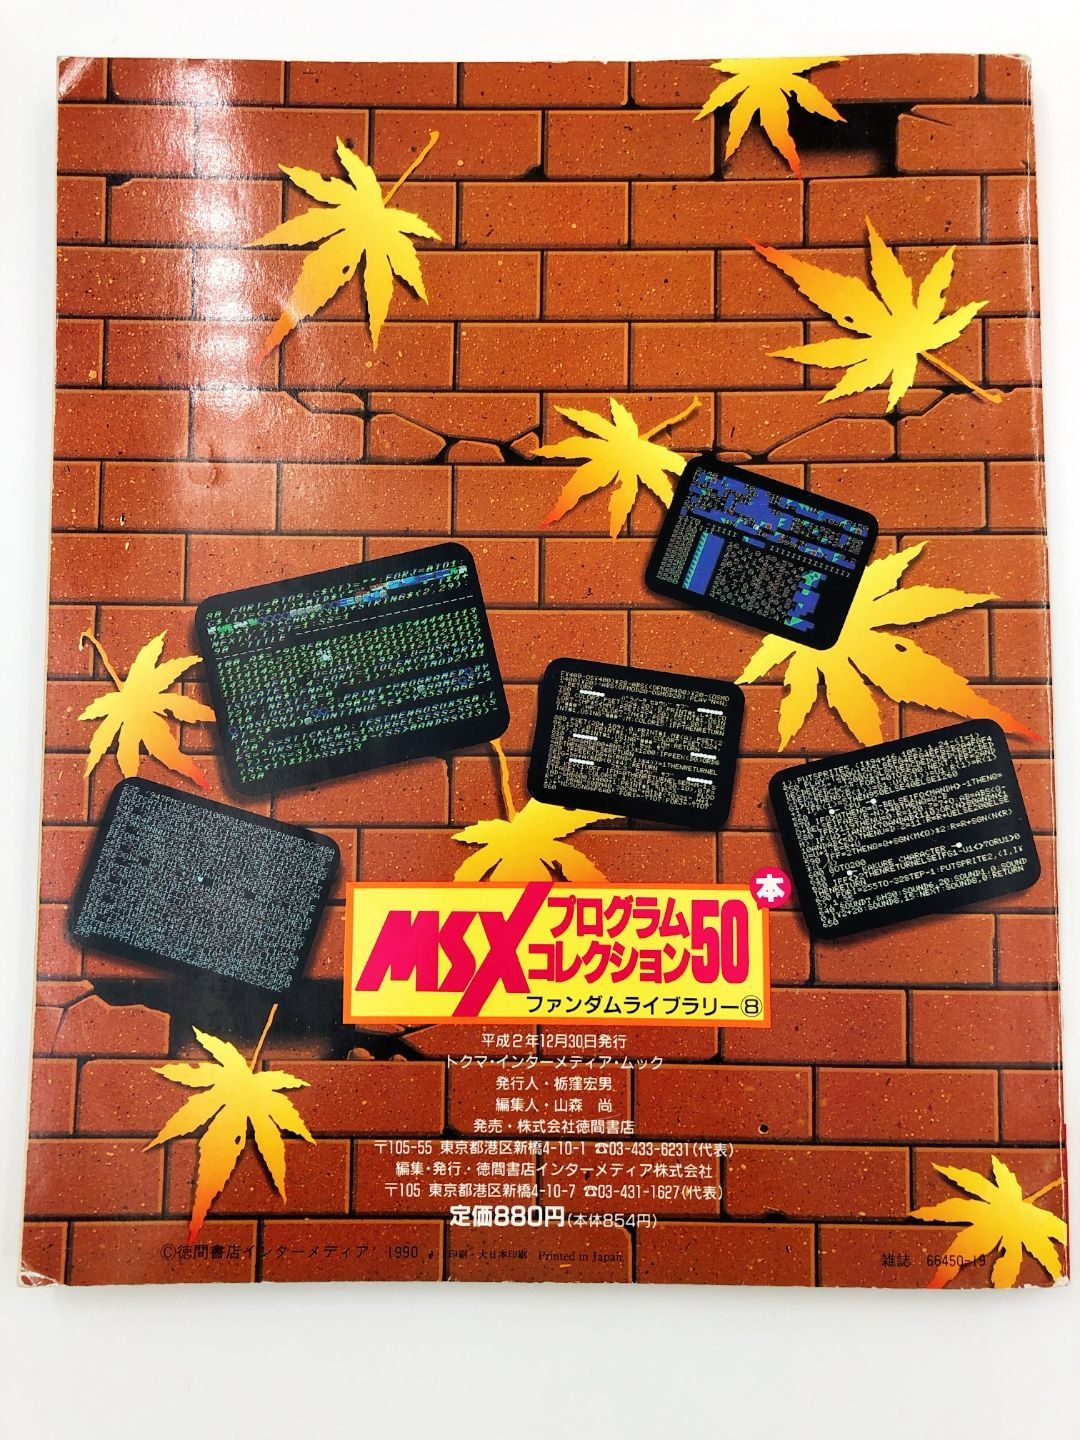 ♪ ゲーム雑誌 MSXプログラムコレクション50本 ファンダムライブラリー